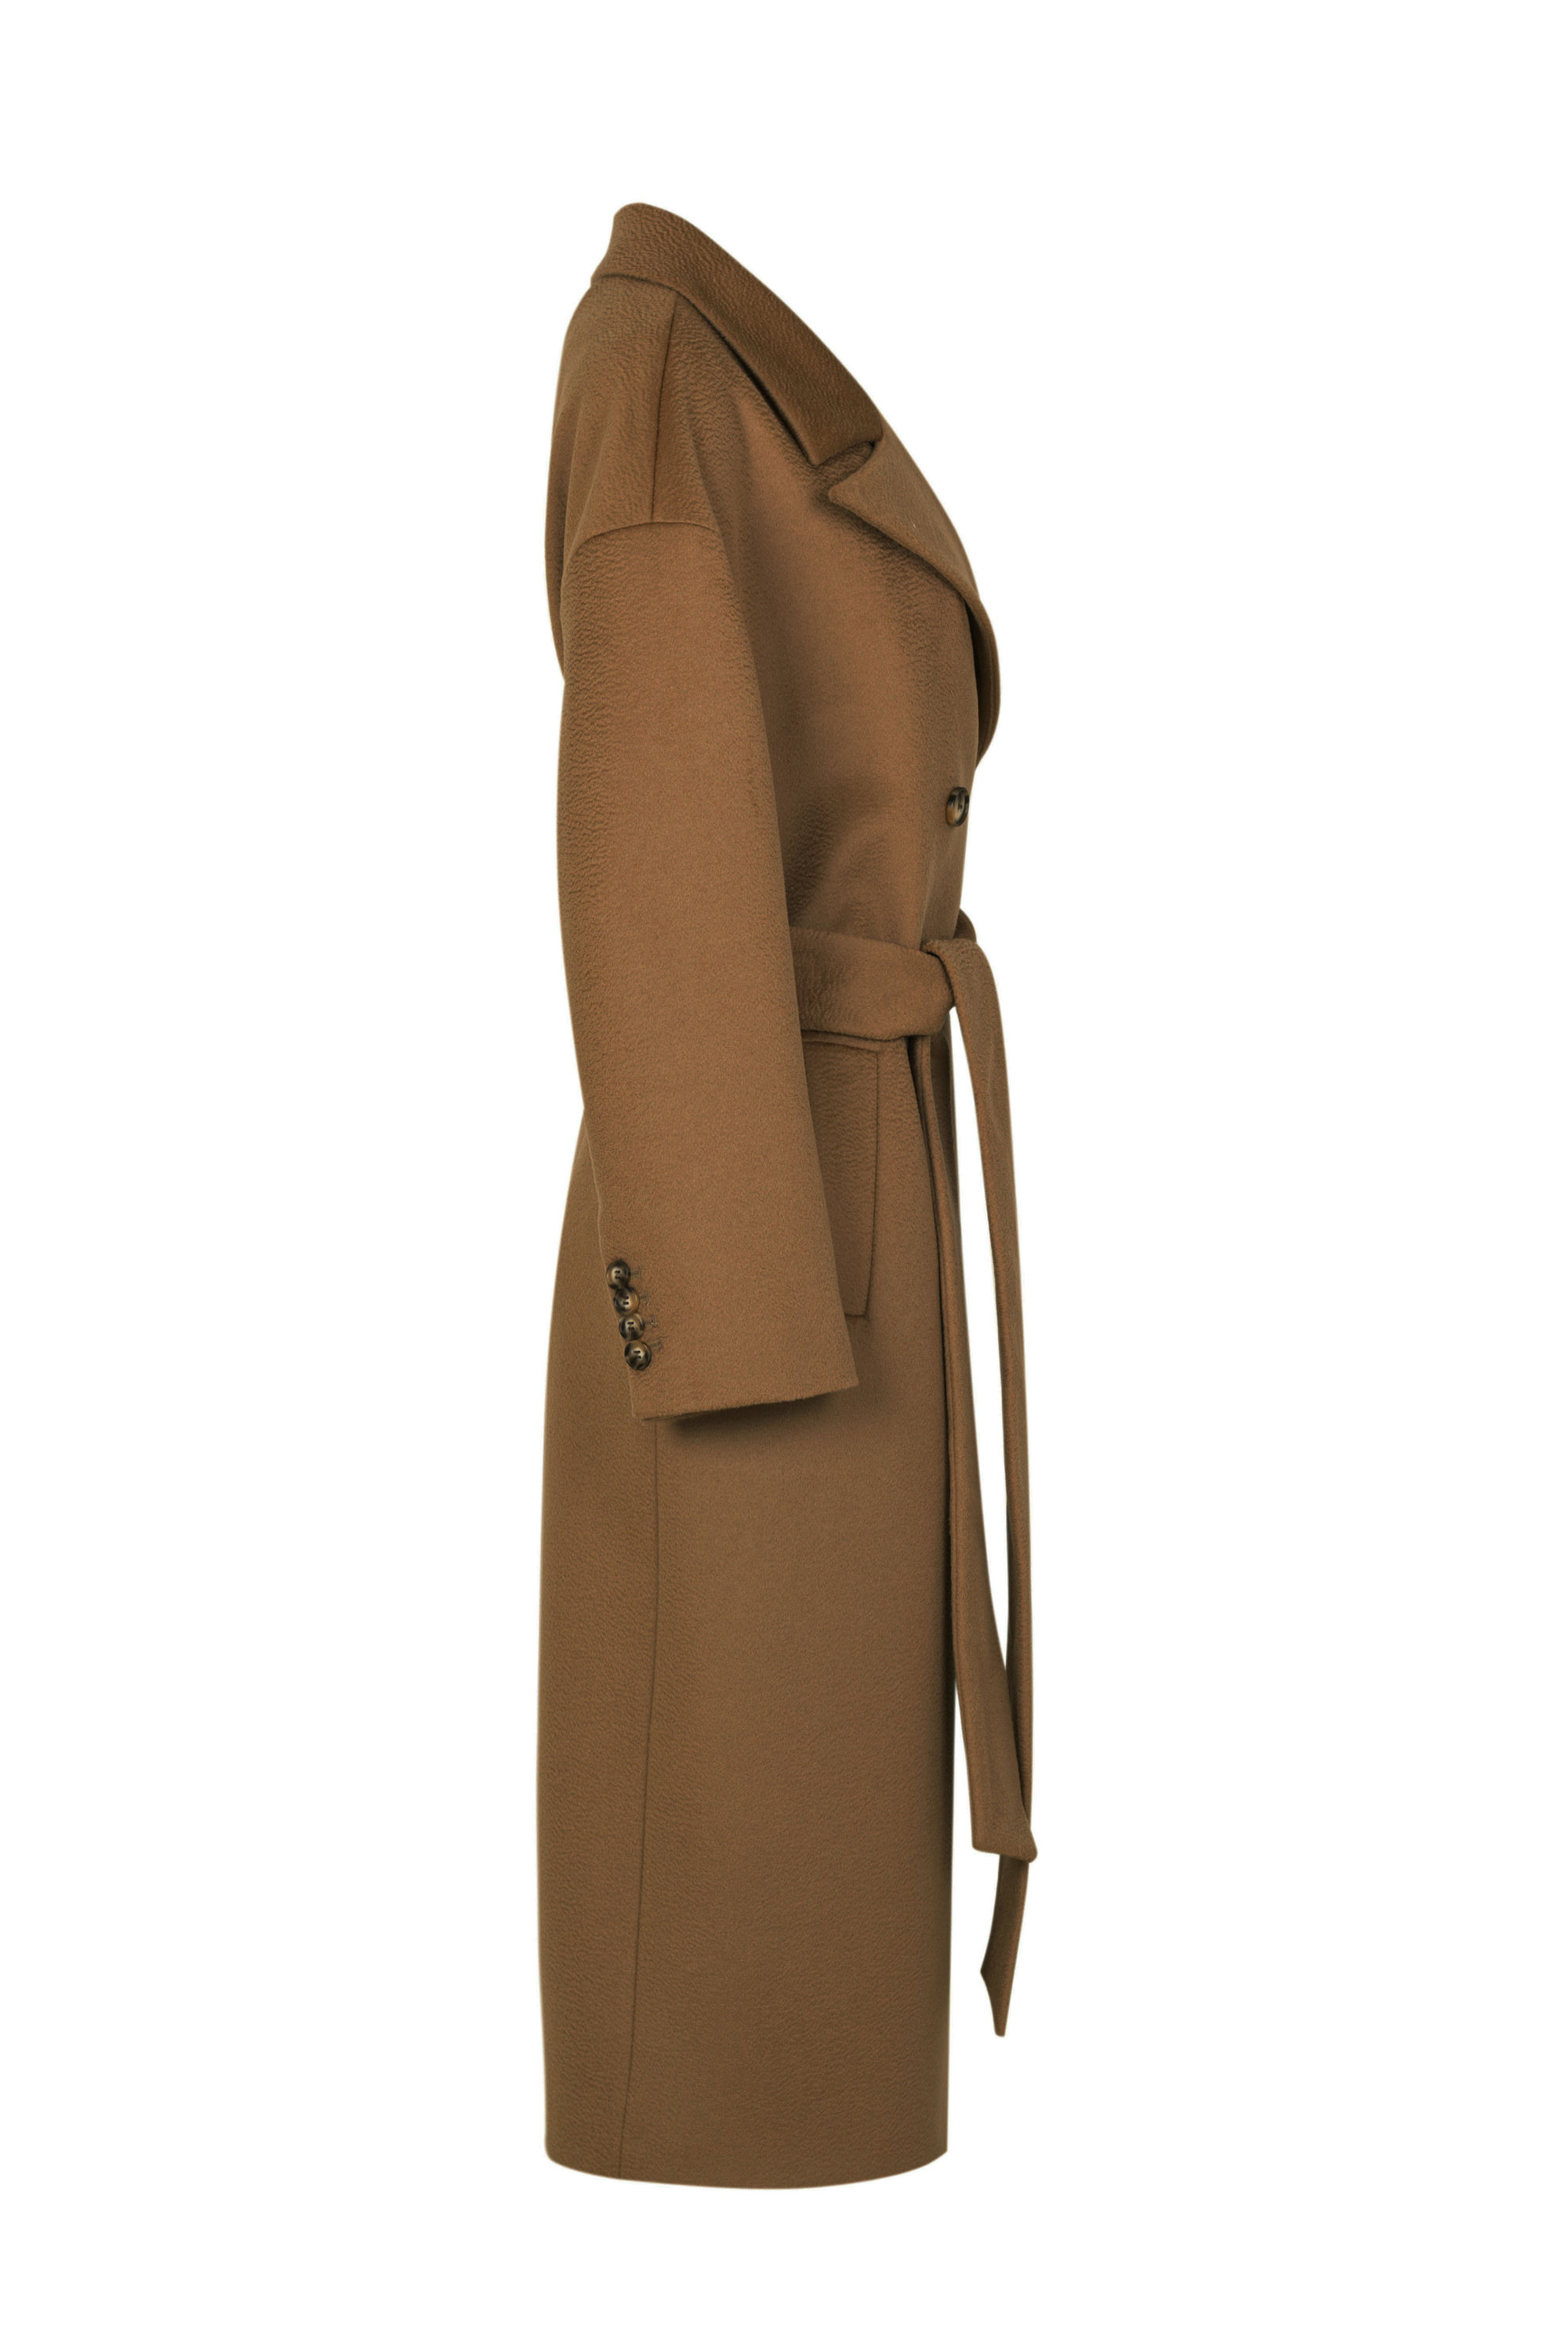 Пальто женское демисезонное 1-13140-1. Фото 5.